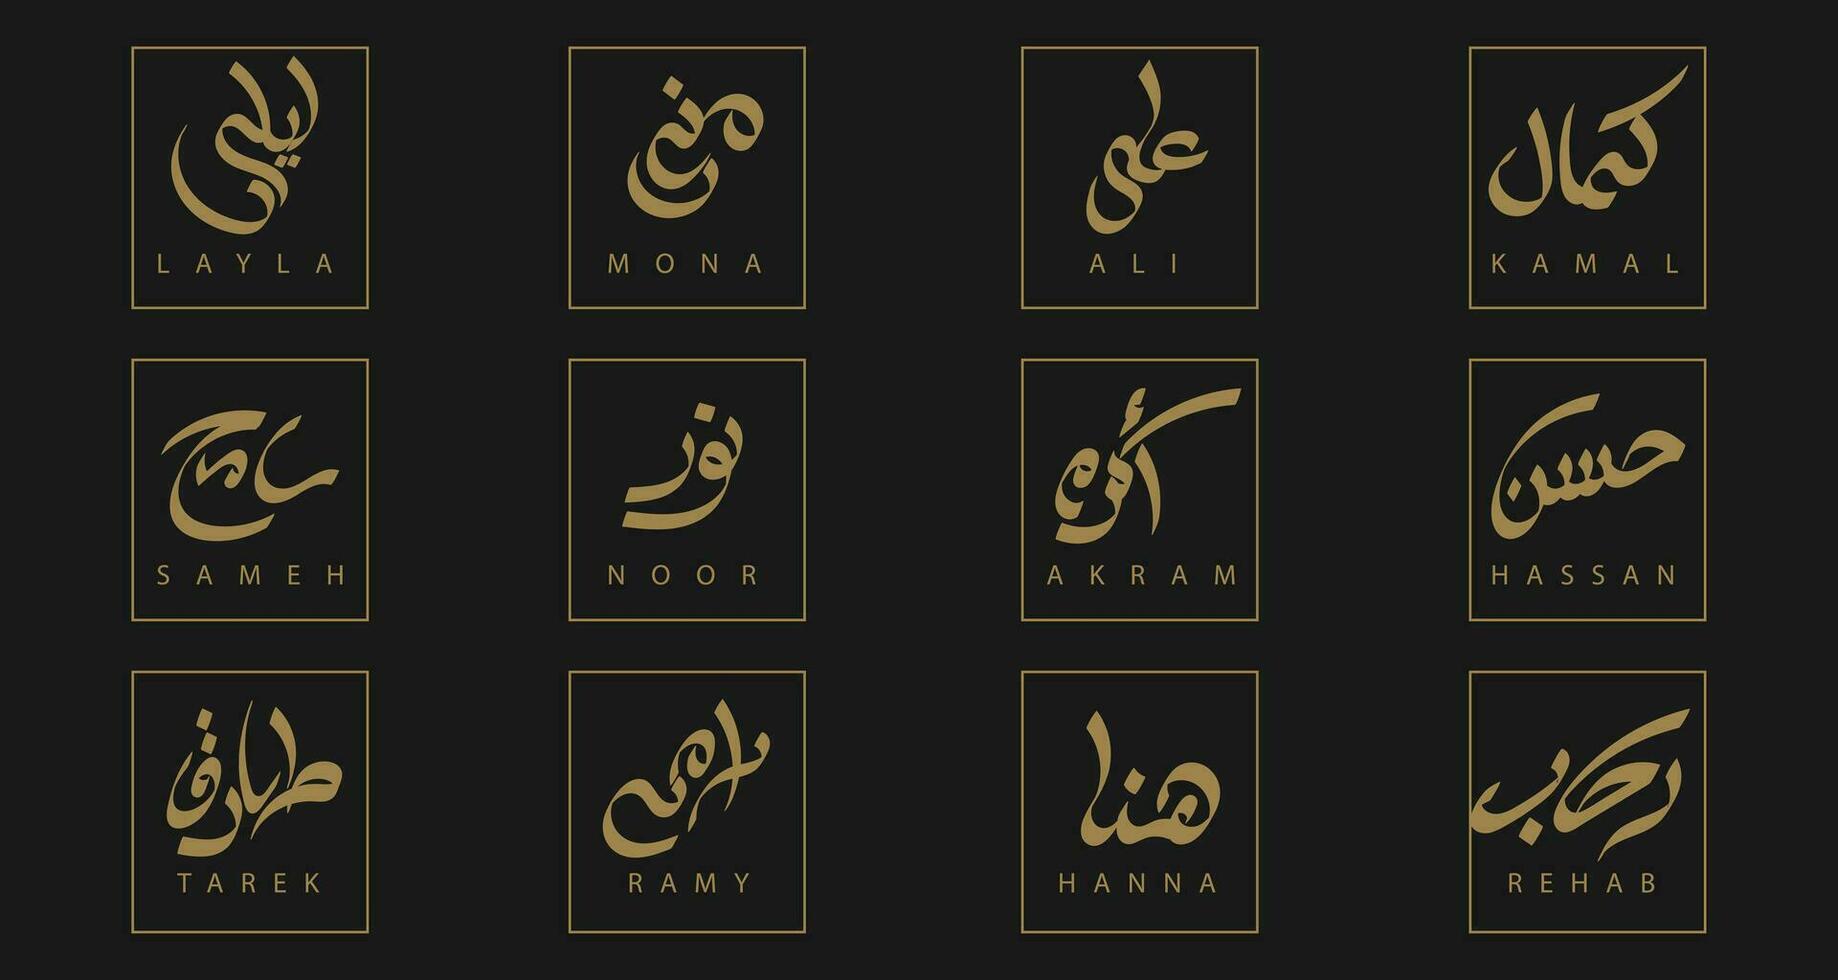 samling av arabicum namn i arabicum språk handskriven kalligrafi font plus dess engelsk skrivning vektor